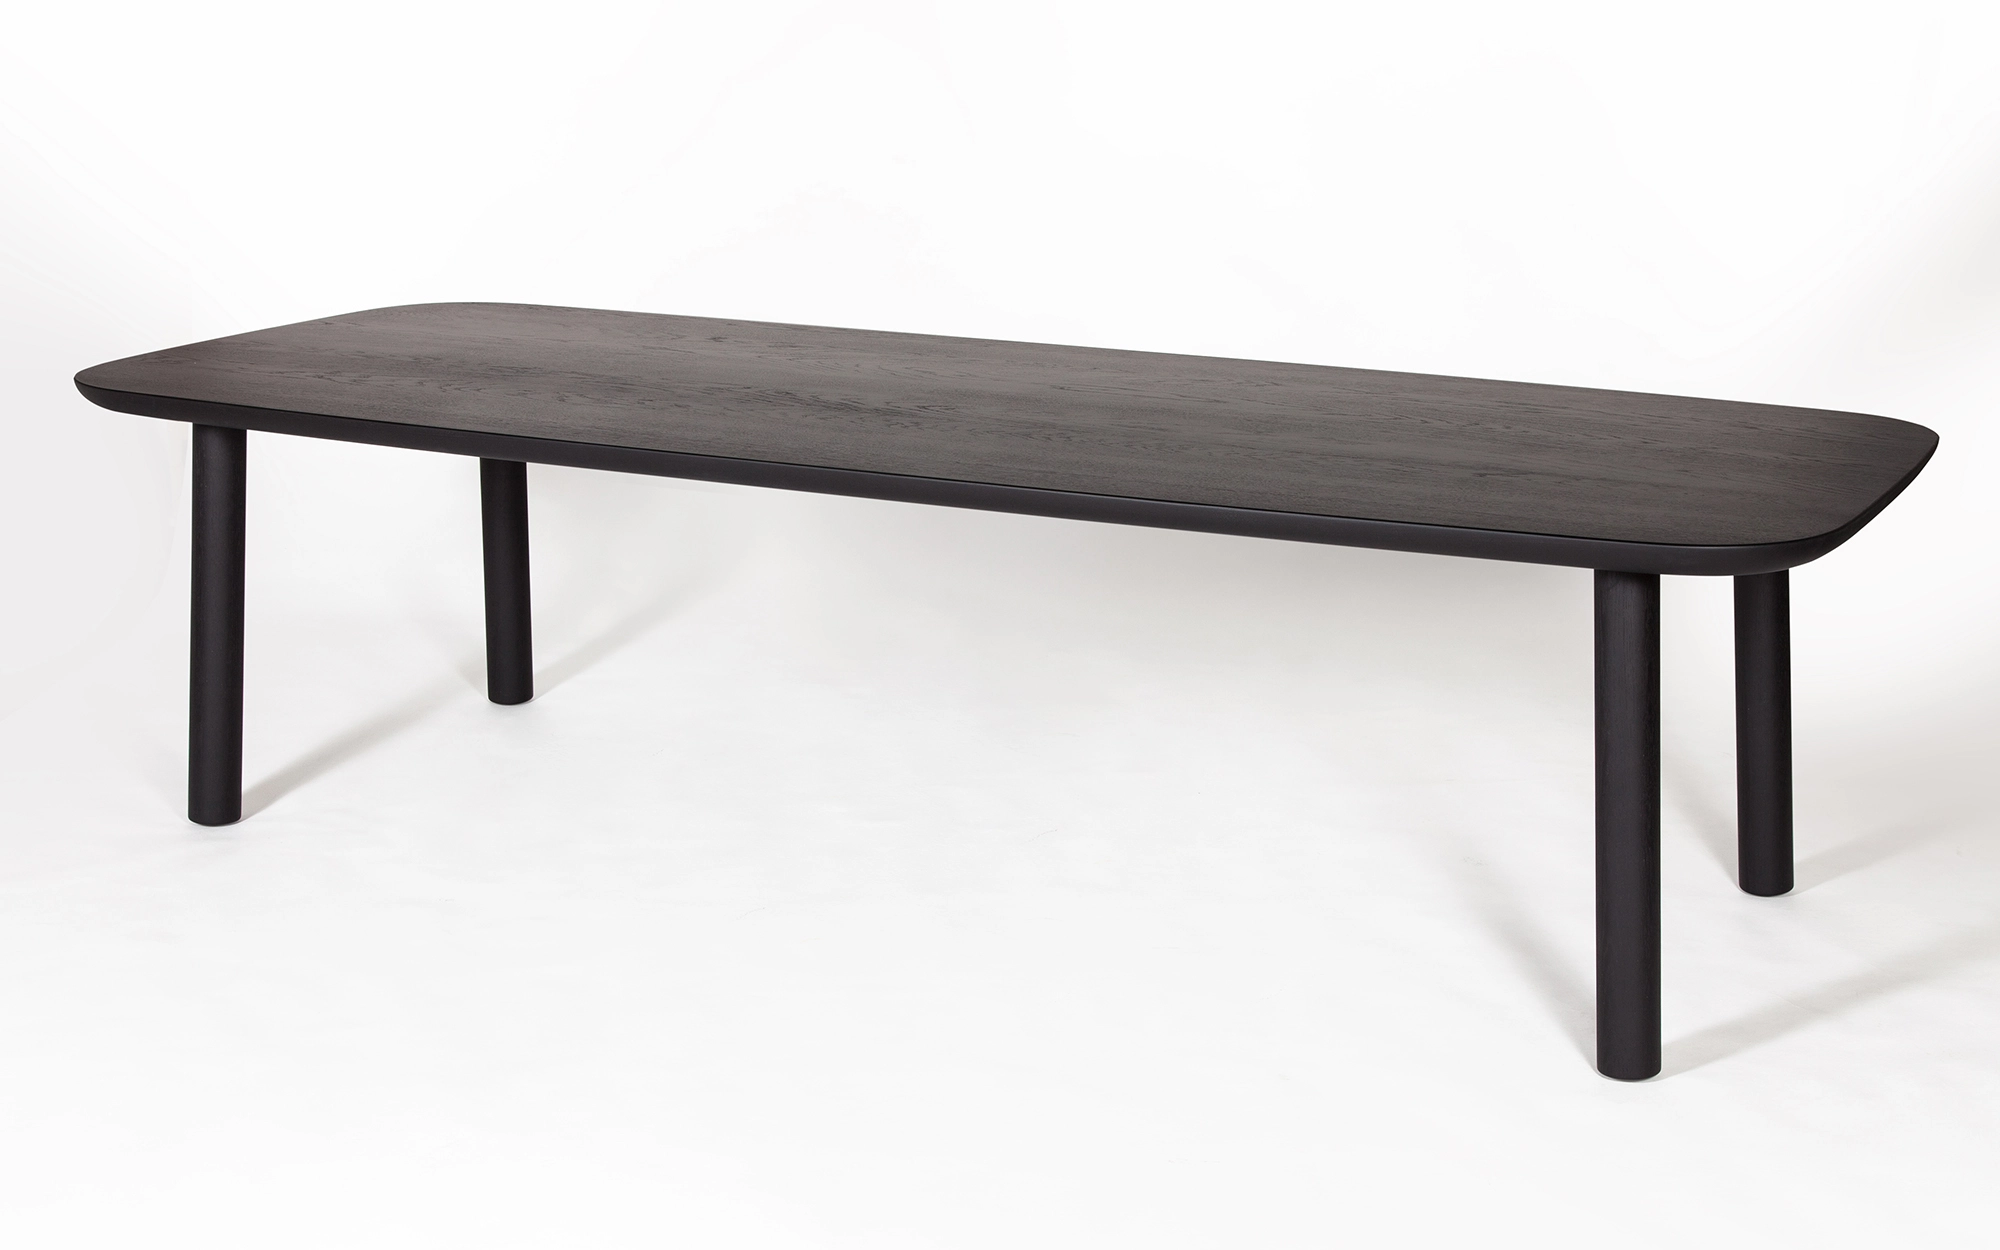 TOOW4L Table - Jasper Morrison - table desk- Galerie kreo